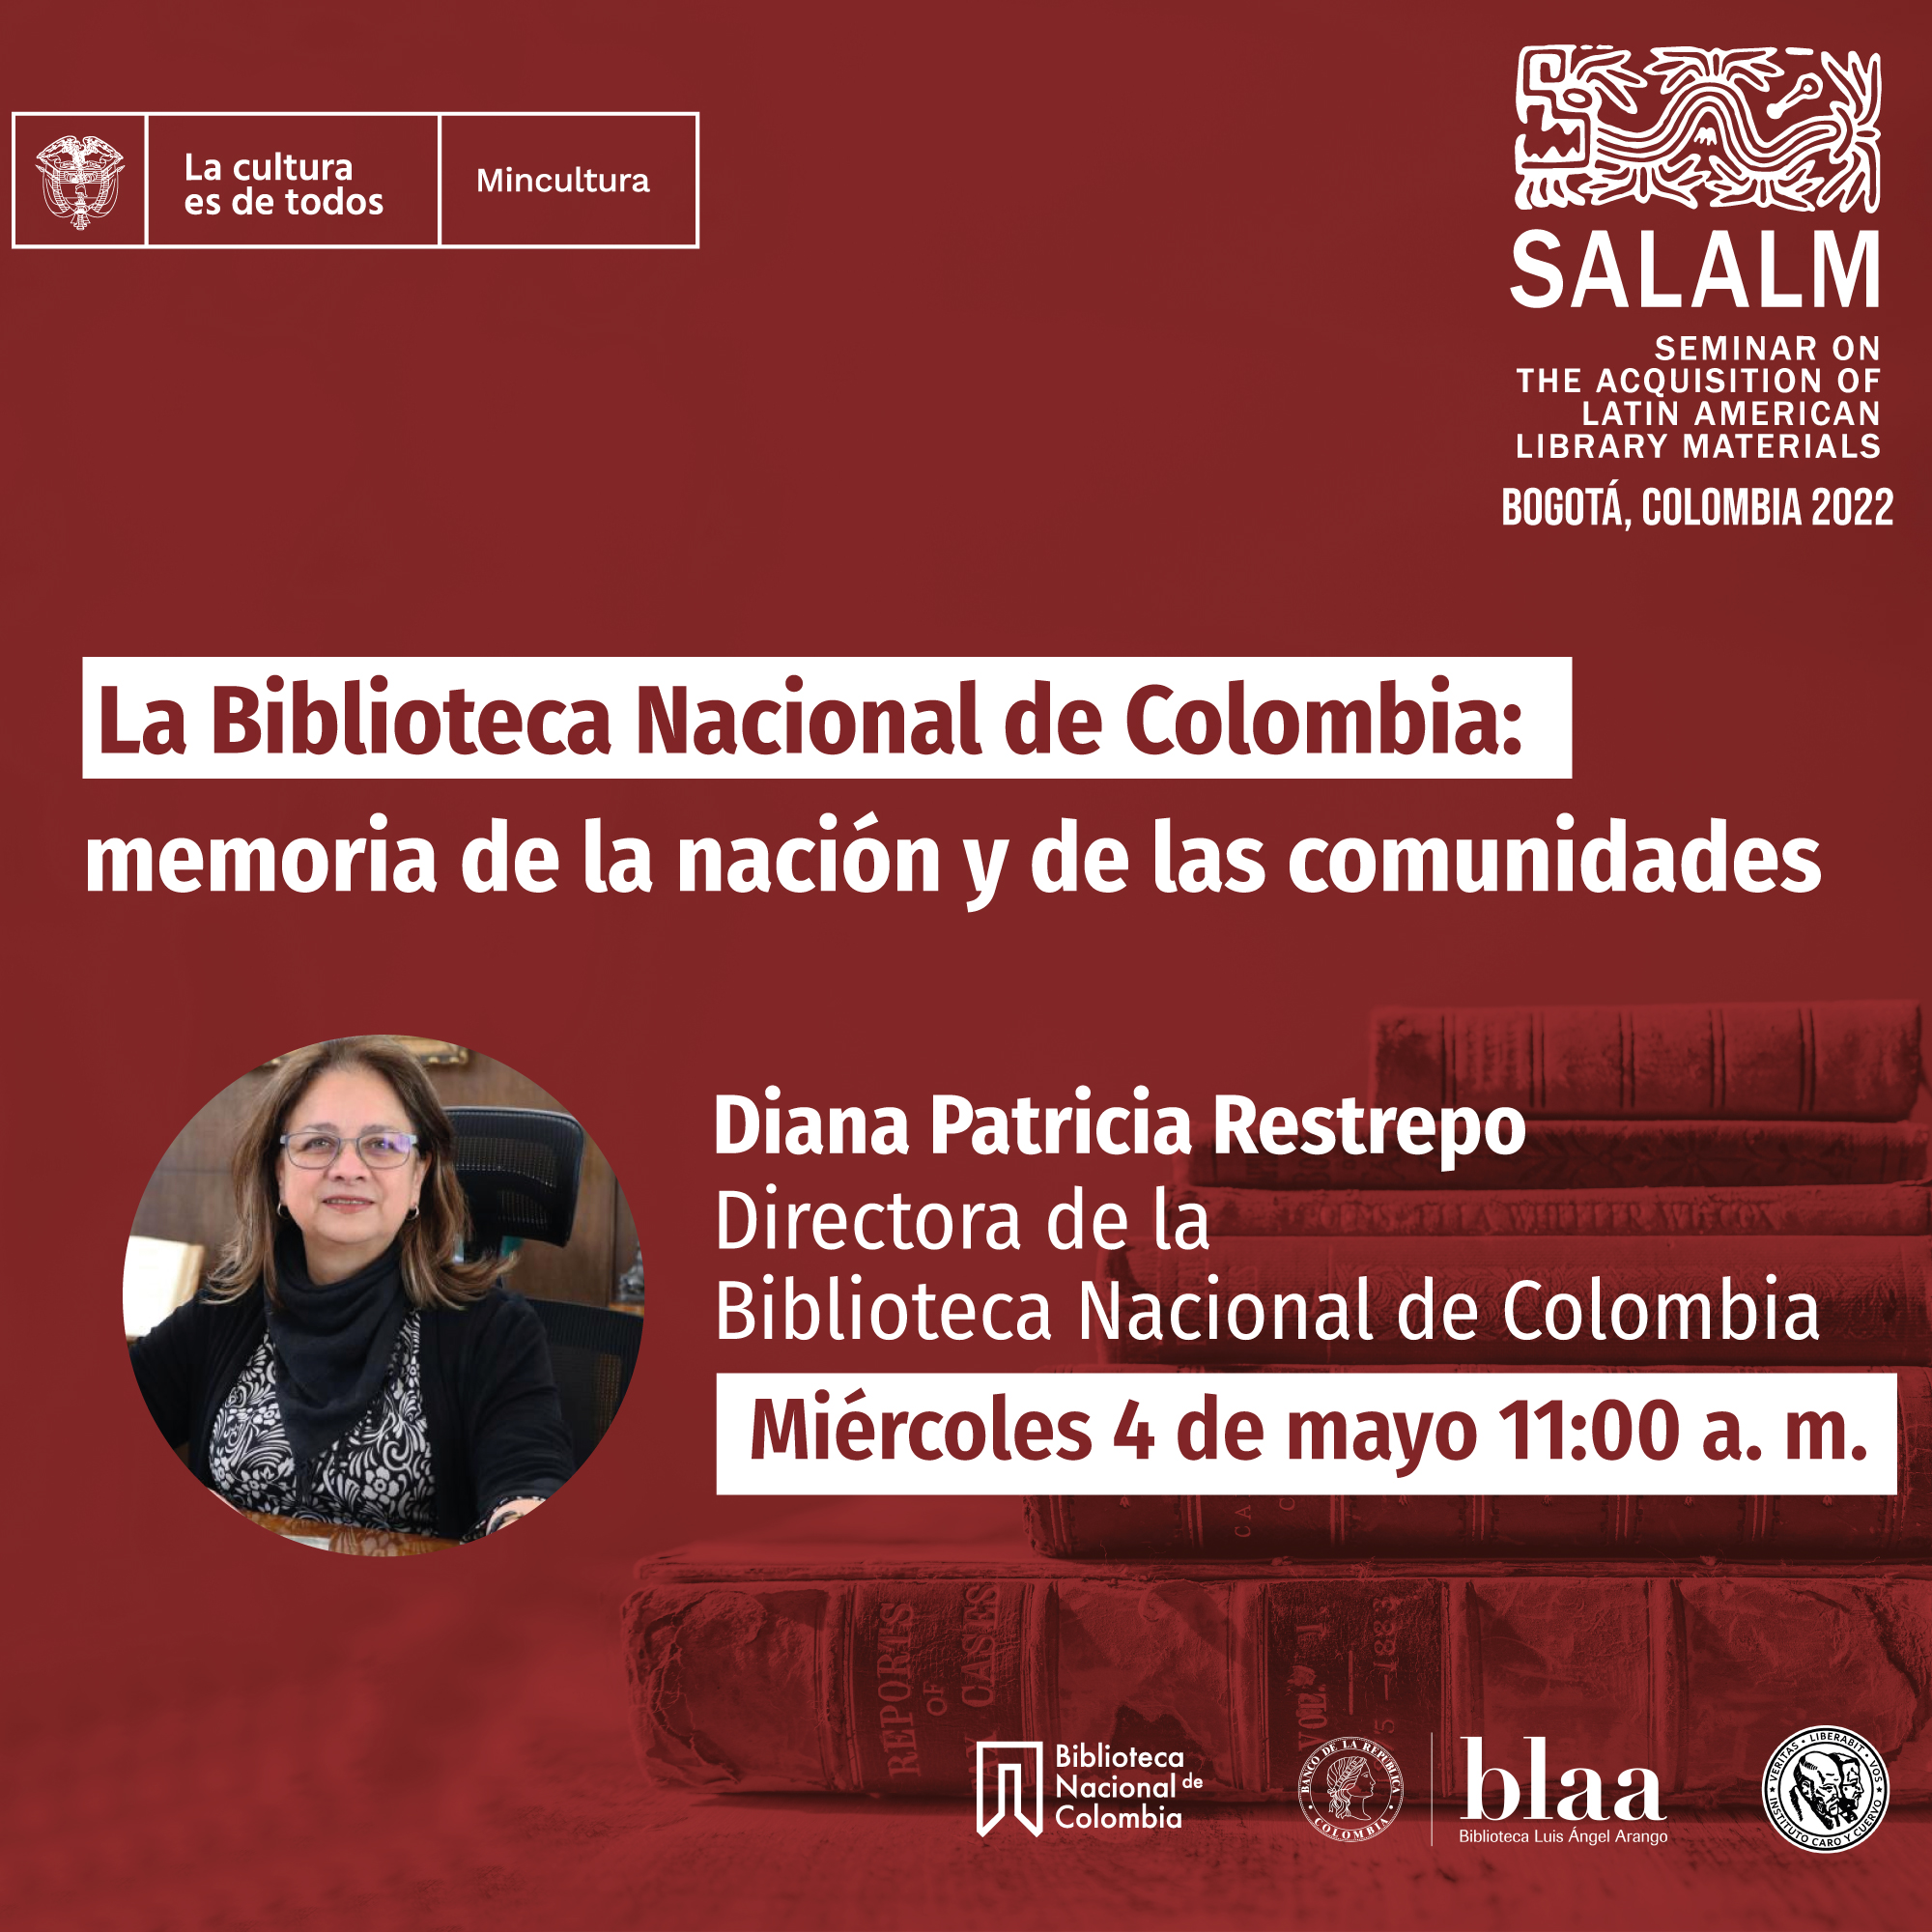 Biblioteca Nacional de Colombia: Memoria de la nación y de las comunidades